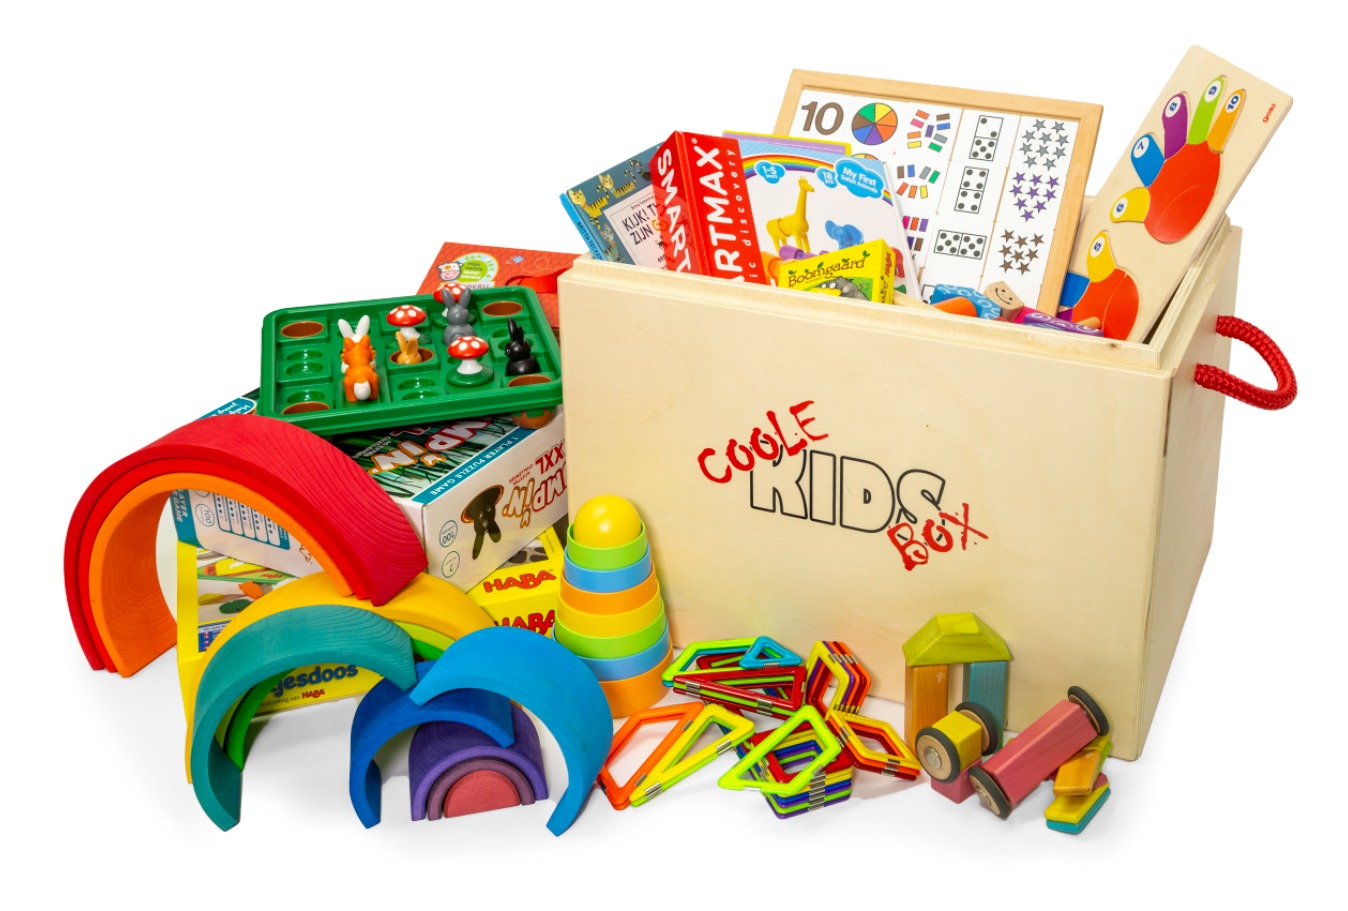 Opblazen Eigenwijs binnenkort Speelgoed kinderdagverblijf - Coole KIDS Box